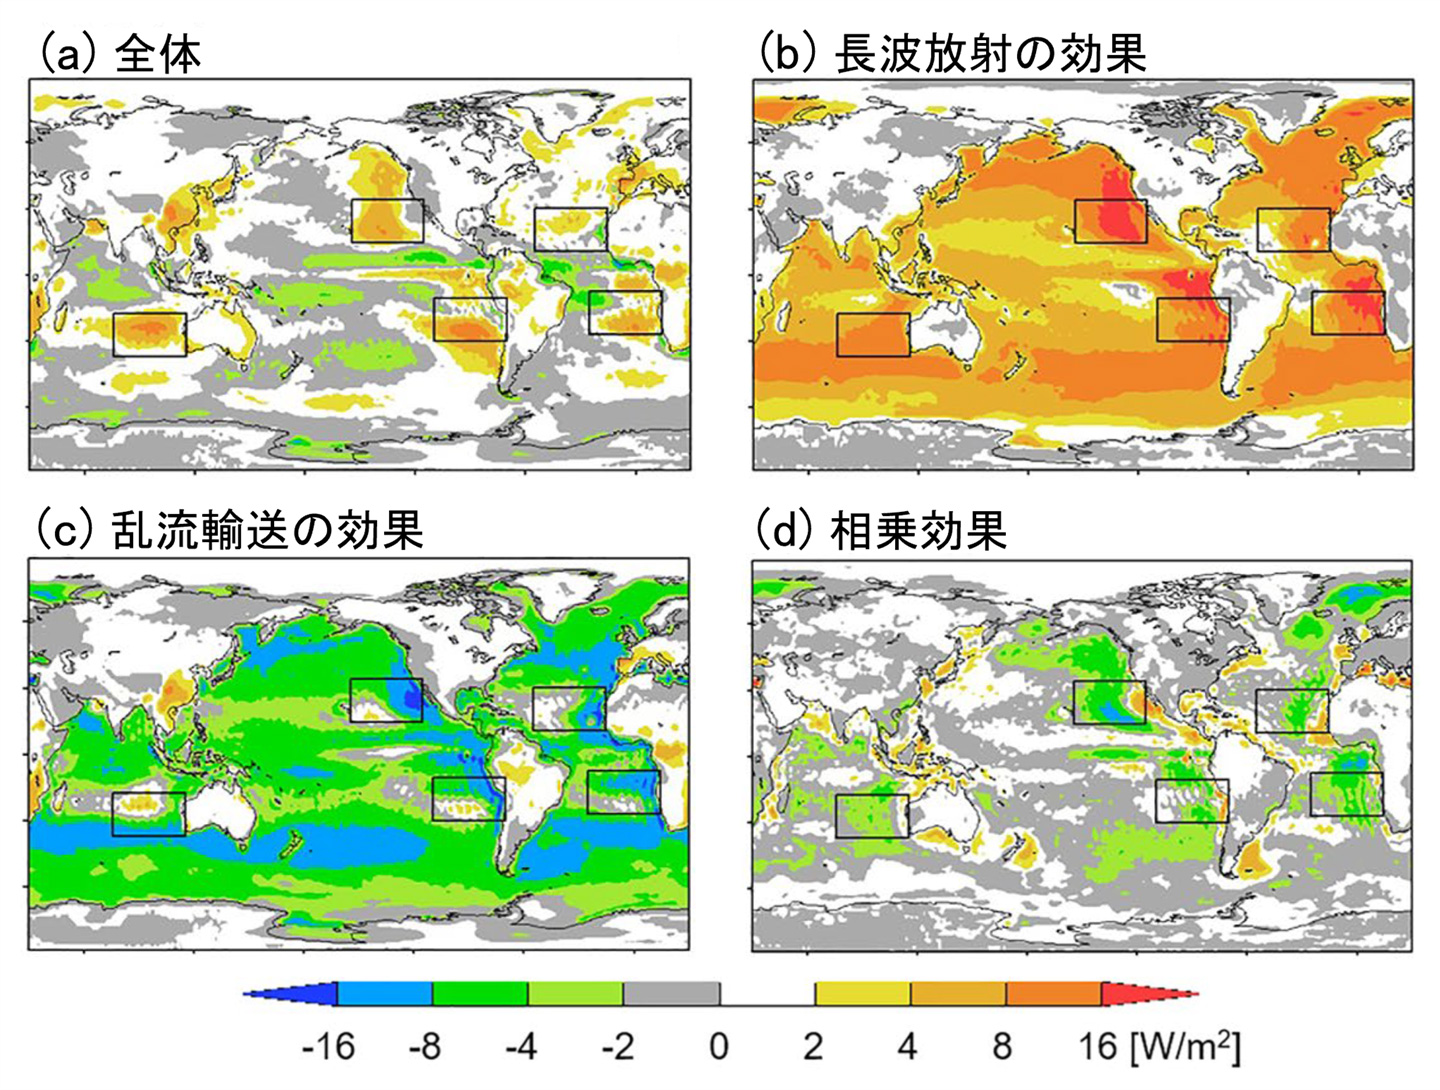 図1　海面水温の4℃の上昇によって生じる下層雲フィードバック。気候モデルMIROC6によるシミュレーション結果。正の値は、下層雲の減少により地球が正味で吸収する放射量が増加したことを示す。(a)はフィードバックの全体量、(b)(c)(d)は(a)の内訳に相当する。(b)は海面からの上向き長波放射が増える効果、(c)は海面から大気へ乱流で輸送される熱や水蒸気などの量が変化する効果、(d)は(b)と(c)の相乗効果を示す。黒い長方形は、現在の気候で下層雲が多く分布する領域を示す。